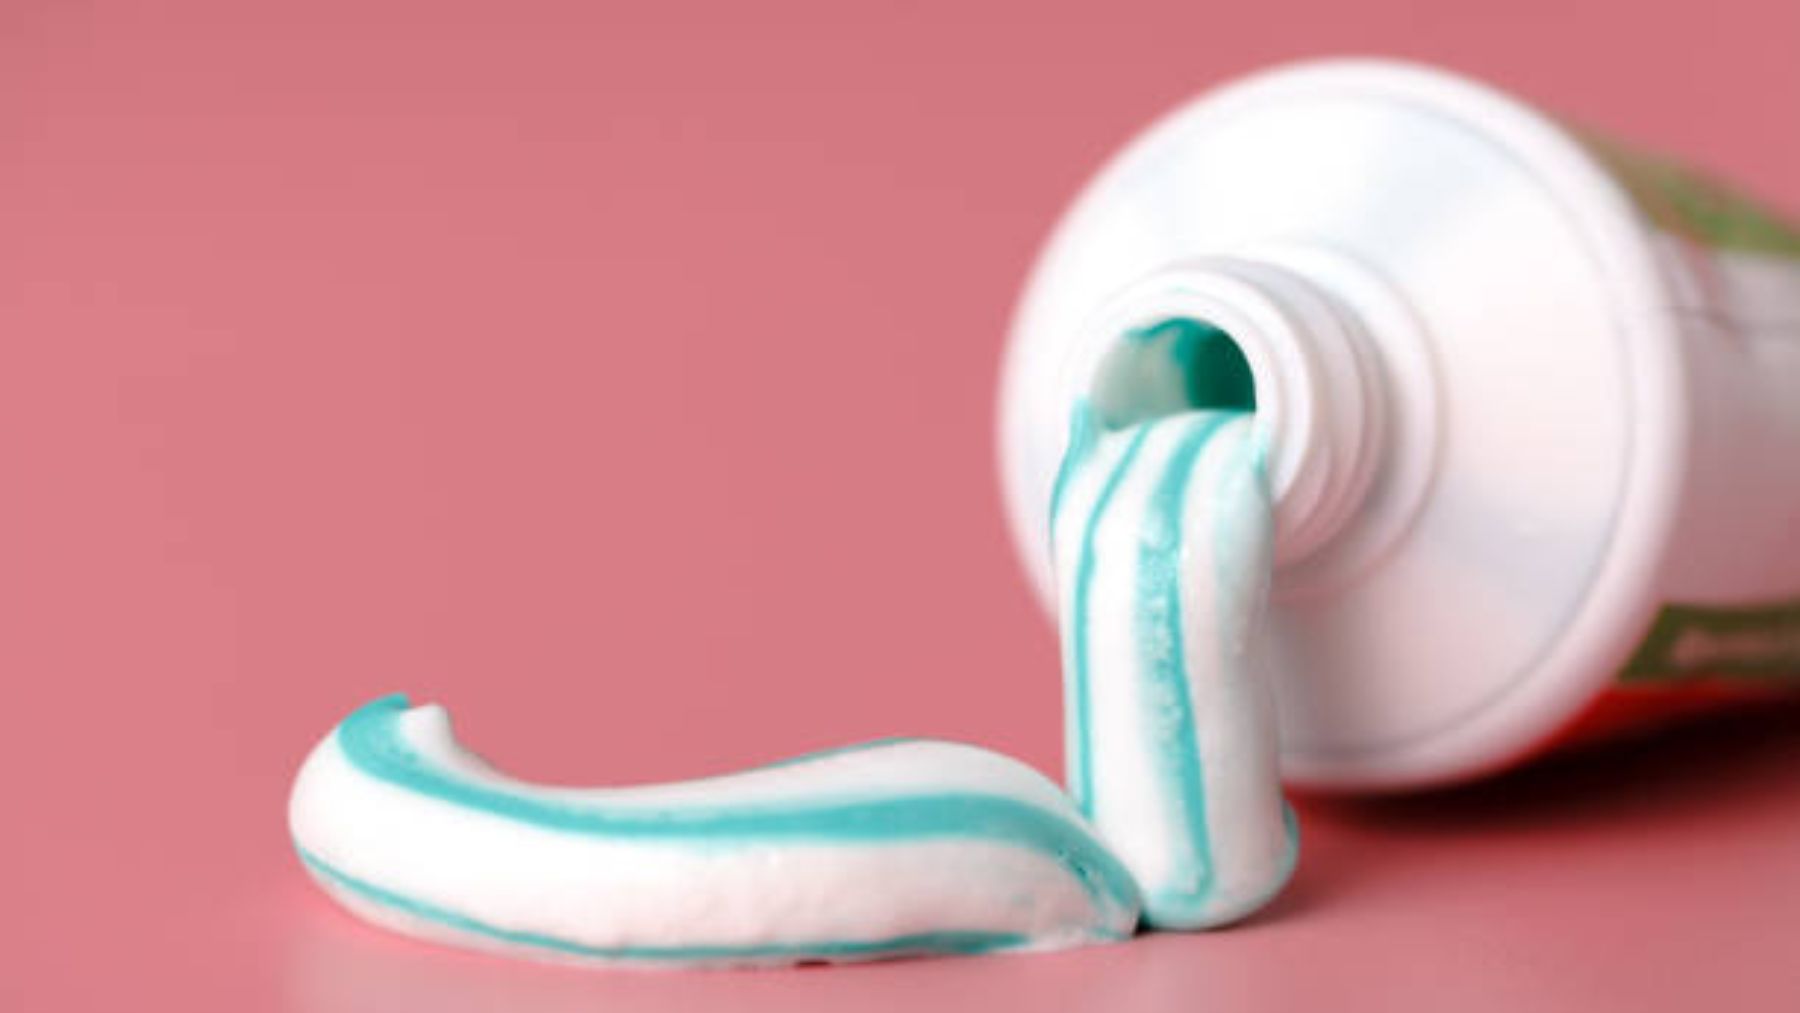 Descubre el porqué no debes usar pasta de dientes para curar granos